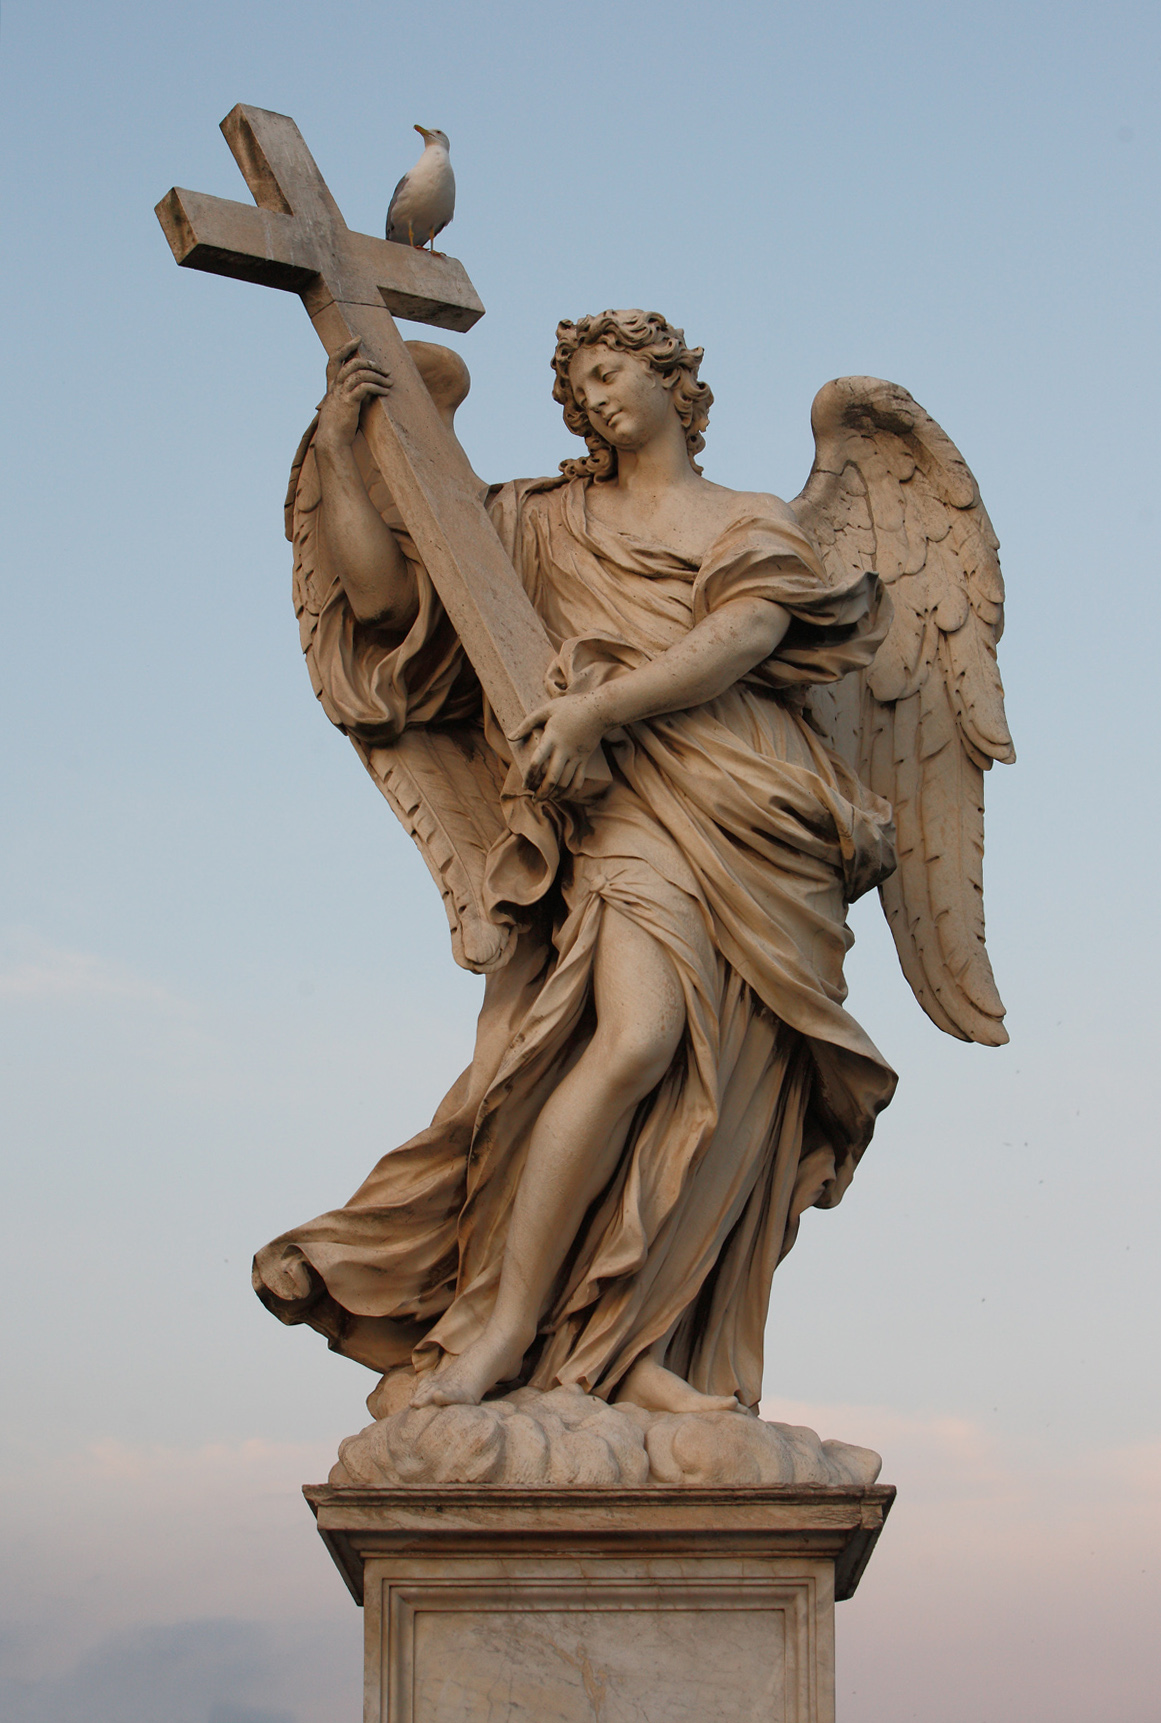 Rzym, rzeźba anioła - fotografia, muzea, obiekty muzealne